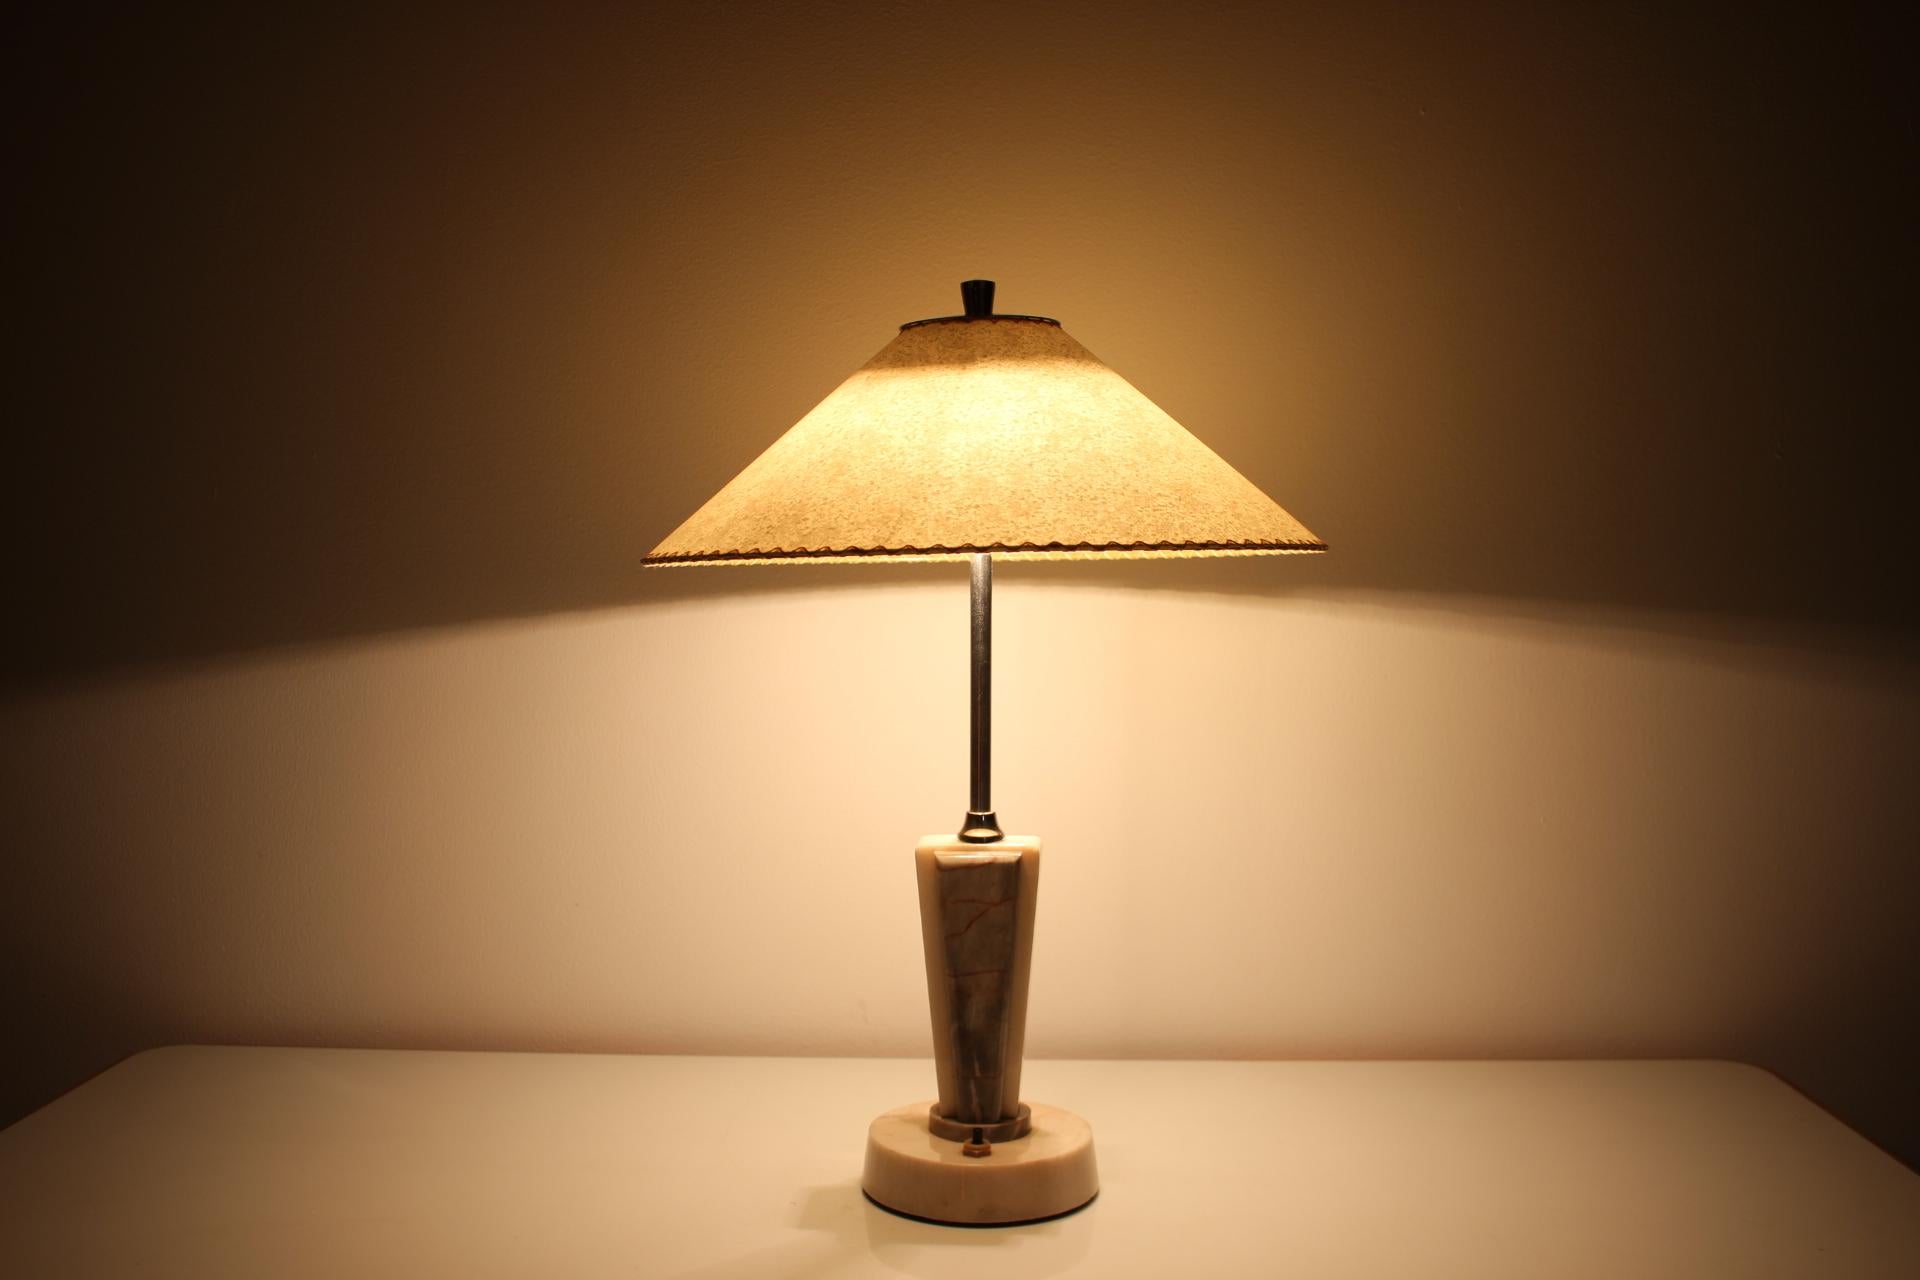 -Guter Zustand
-Neuer handgefertigter Lampenschirm aus Pergamentpapier
-Cisteno
-Hergestellt aus Marmor und Metall
-Markiert.